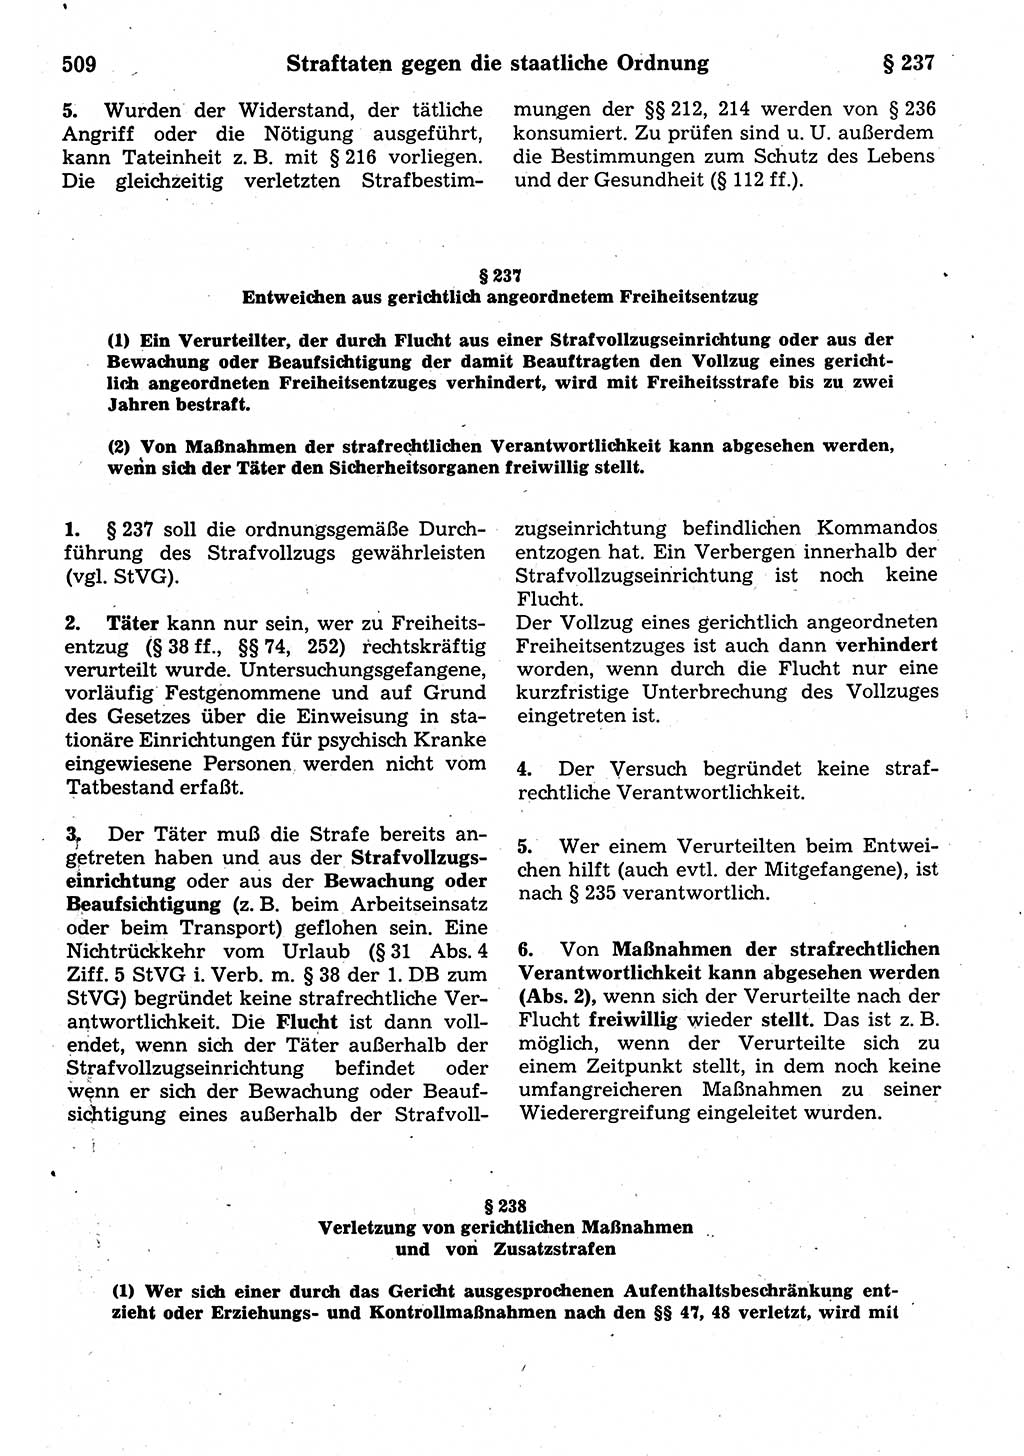 Strafrecht der Deutschen Demokratischen Republik (DDR), Kommentar zum Strafgesetzbuch (StGB) 1987, Seite 509 (Strafr. DDR Komm. StGB 1987, S. 509)